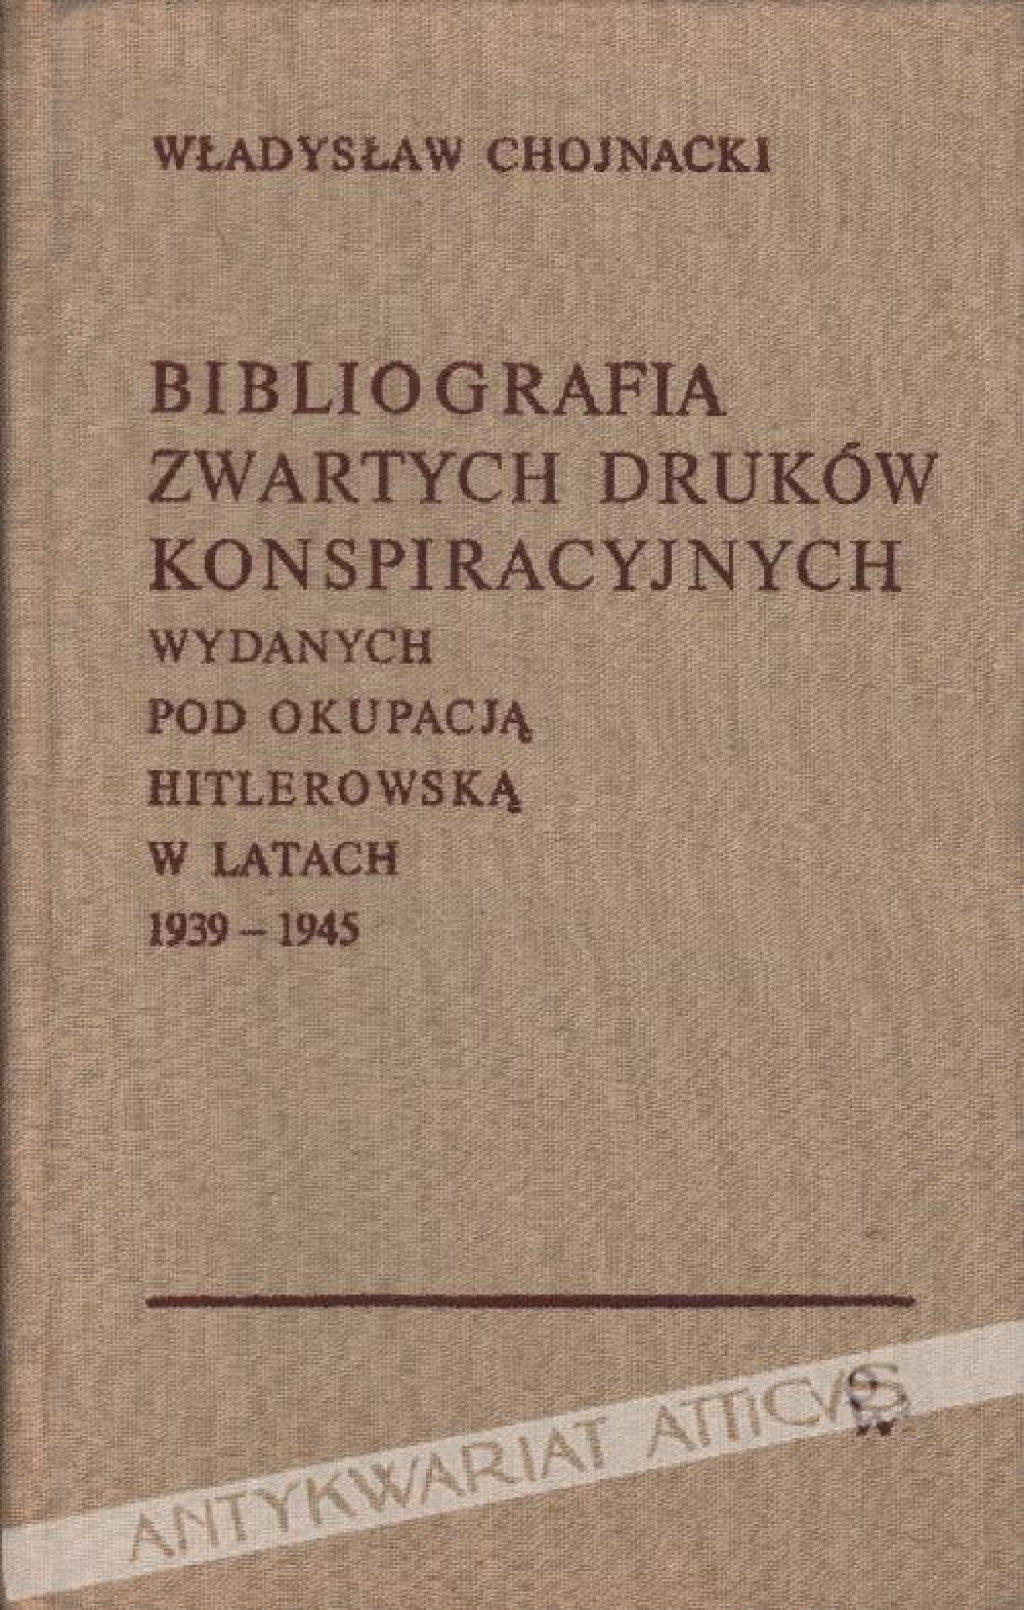 Bibliografia zwartych druków konspiracyjnych wydanych pod okupacją hitlerowską w latach 1939-1945